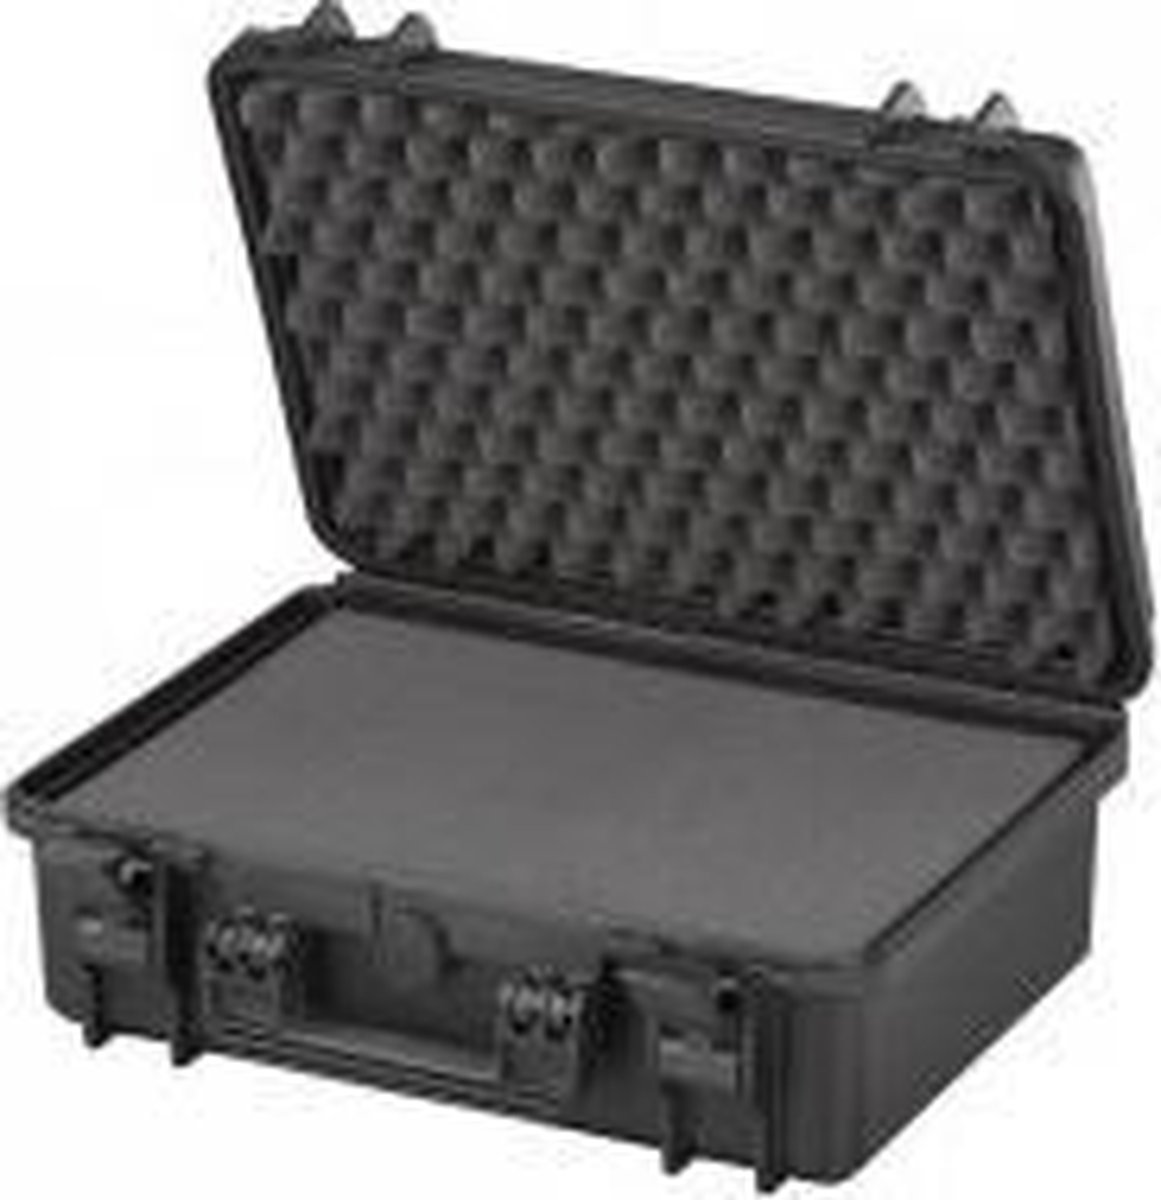 Gaffergear camera koffer 043 zwart - incl. plukschuim - 36,600000 x 17,600000 x 17,600000 cm (BxDxH)